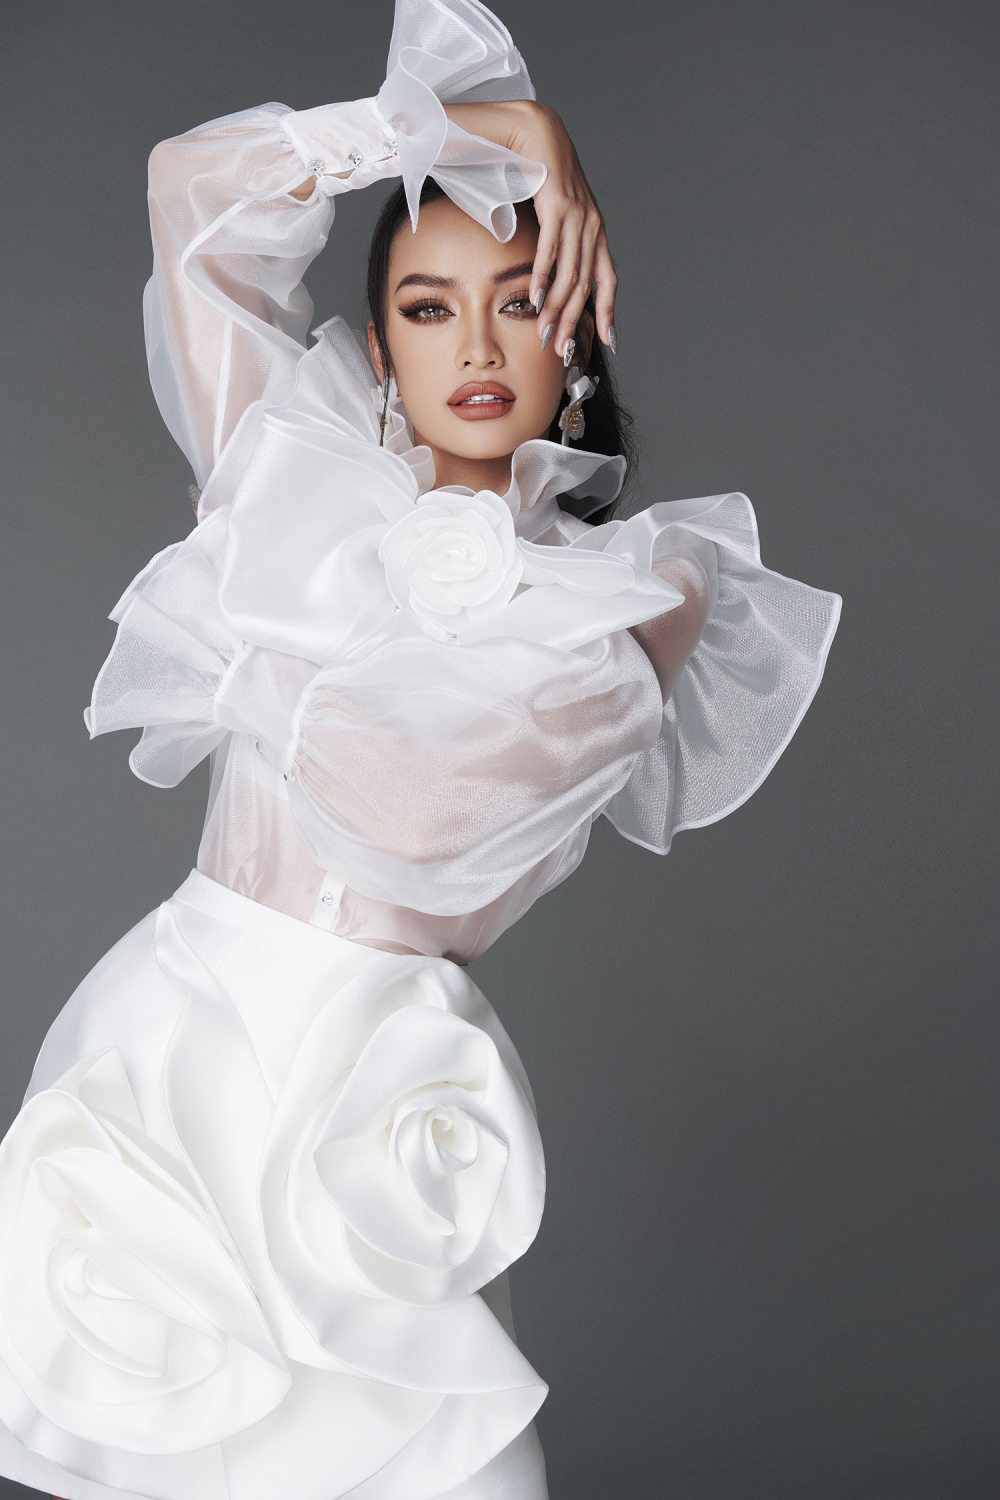 Hoa hậu Ngọc Châu thanh lịch trong sắc trắng - 7